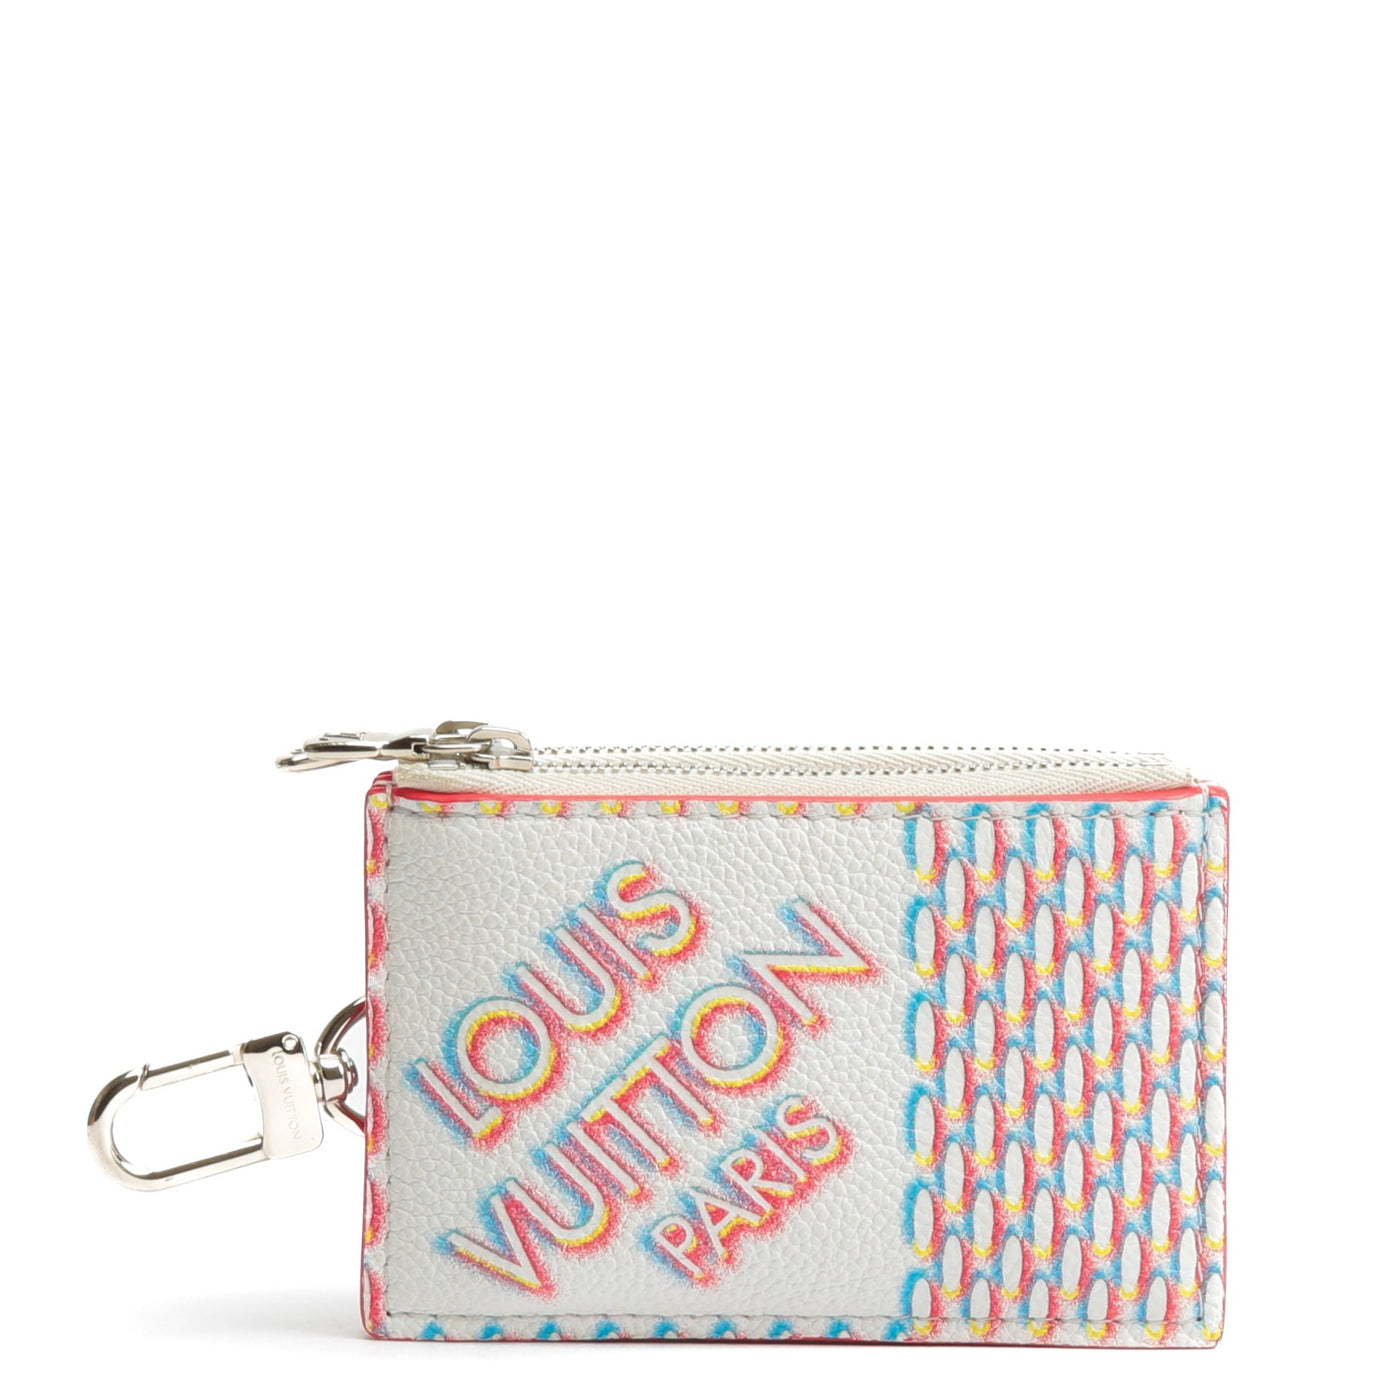 SOLD Louis Vuitton Zipped Card Holder Wallet